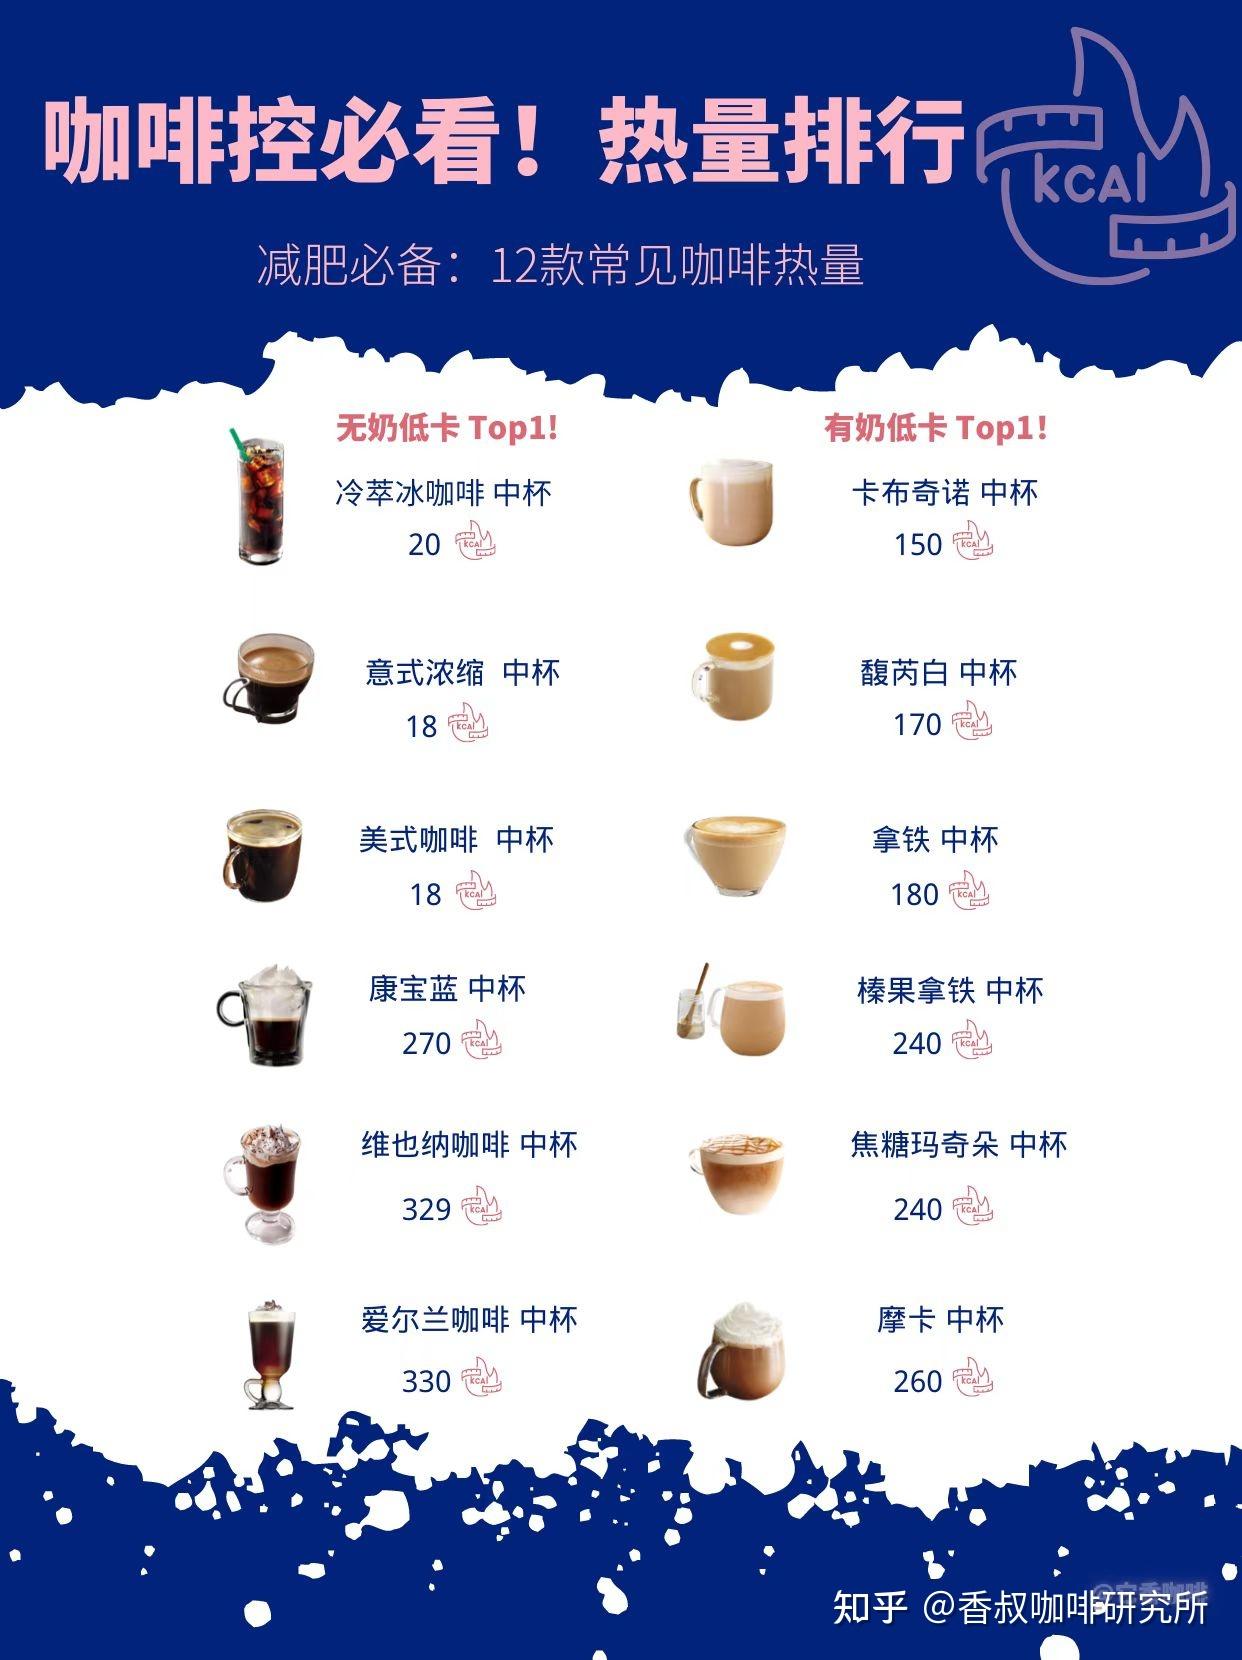 4月咖啡行业-全国门店数量和新开门店数量TOP15品牌排行榜 - 知乎